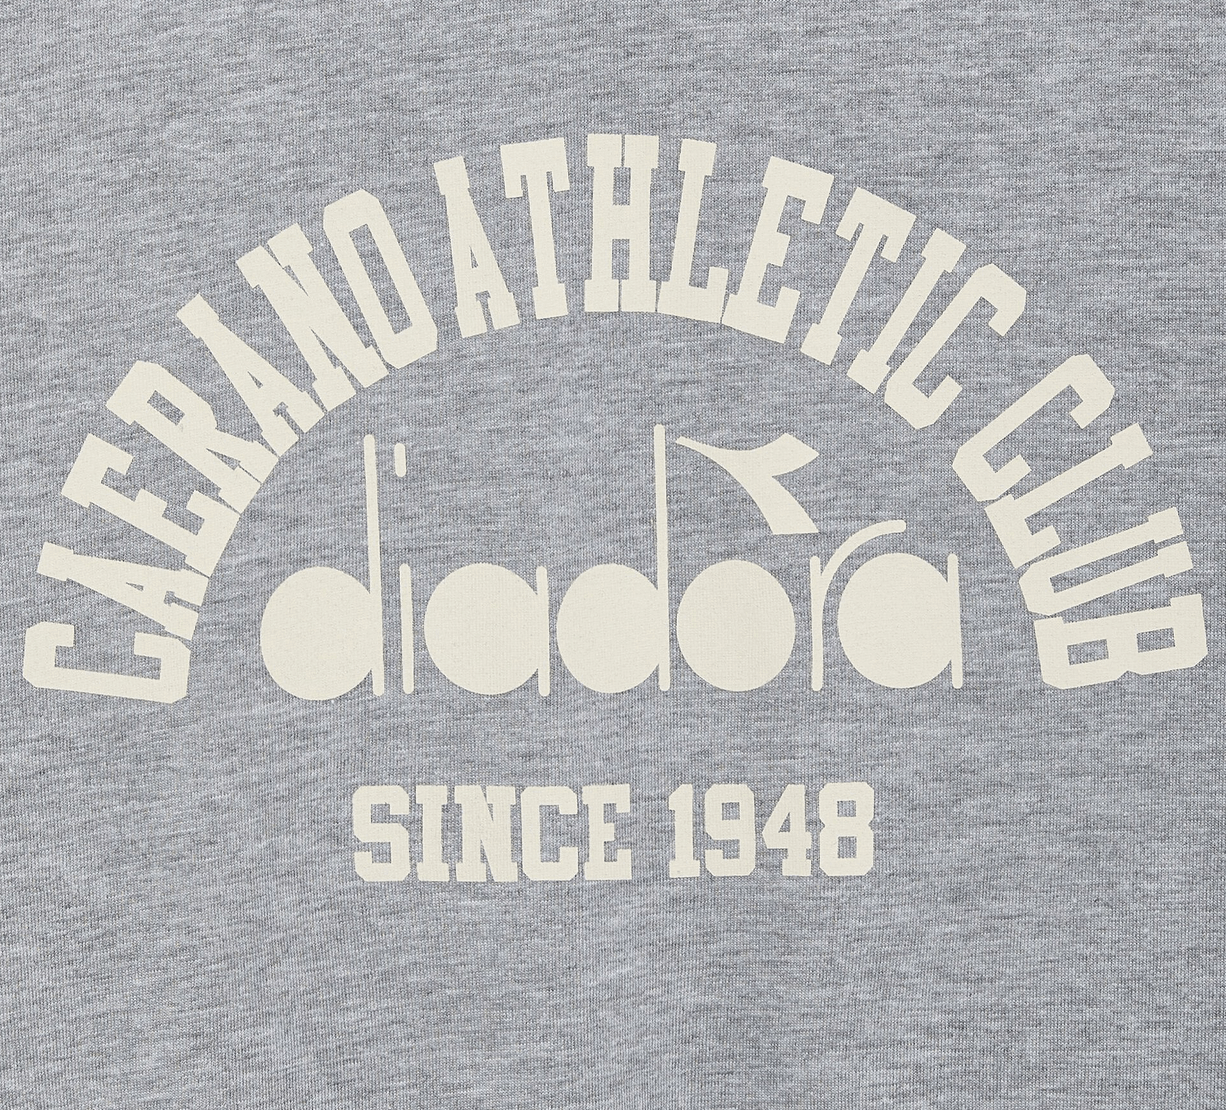 Camiseta Diadora 1948 Athletic Club